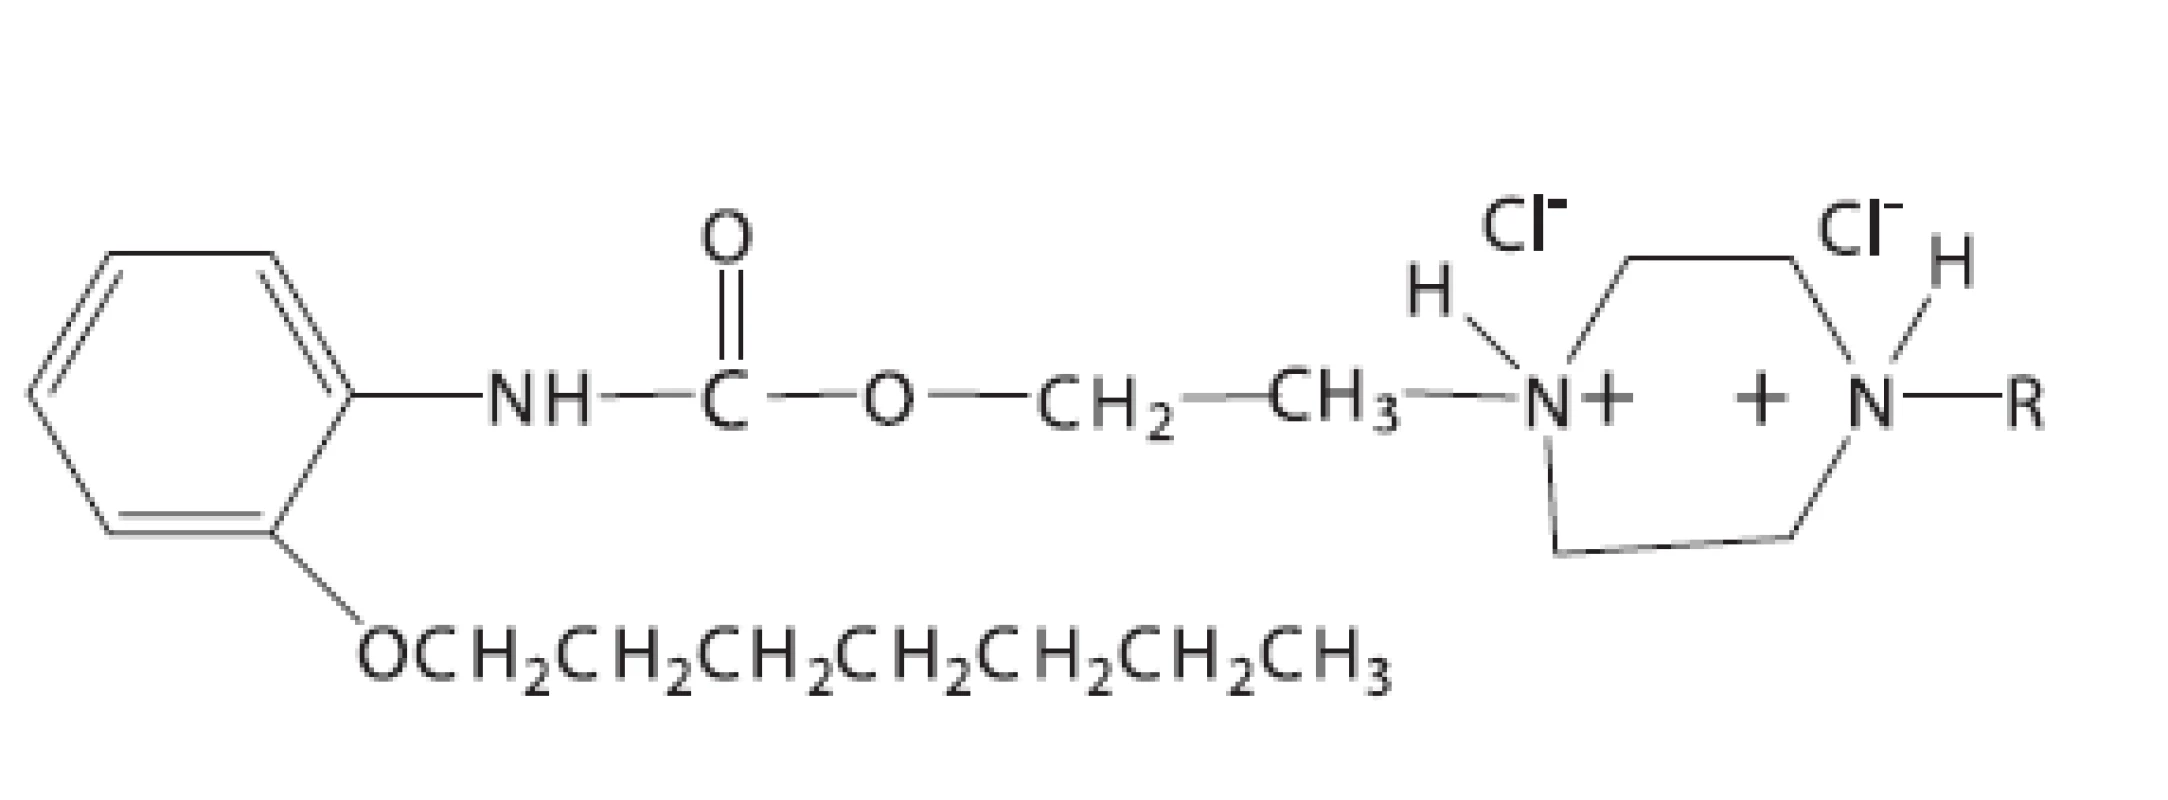 Dihydrochloridy